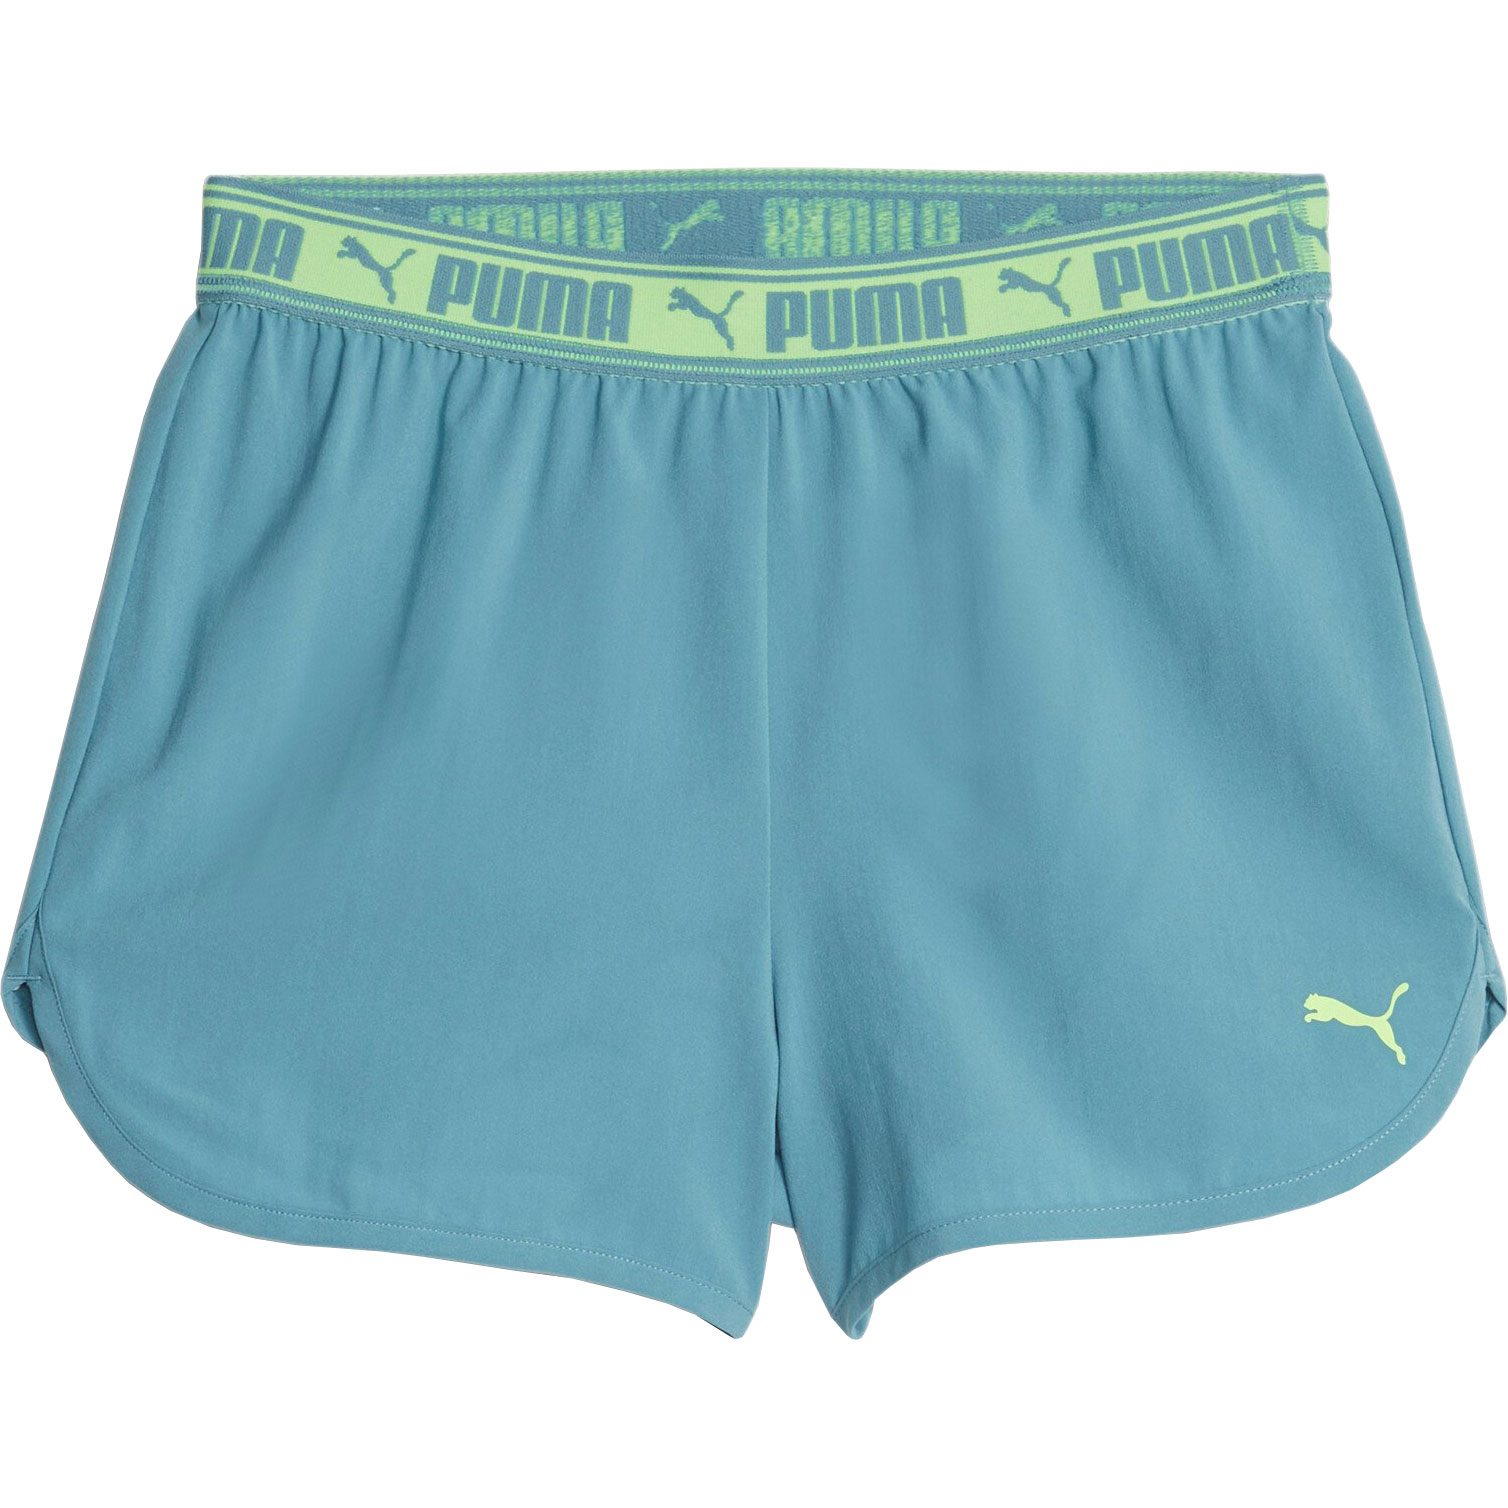 - Woven Shorts Girls bold Sport at Puma Strong Bittl blue Shop